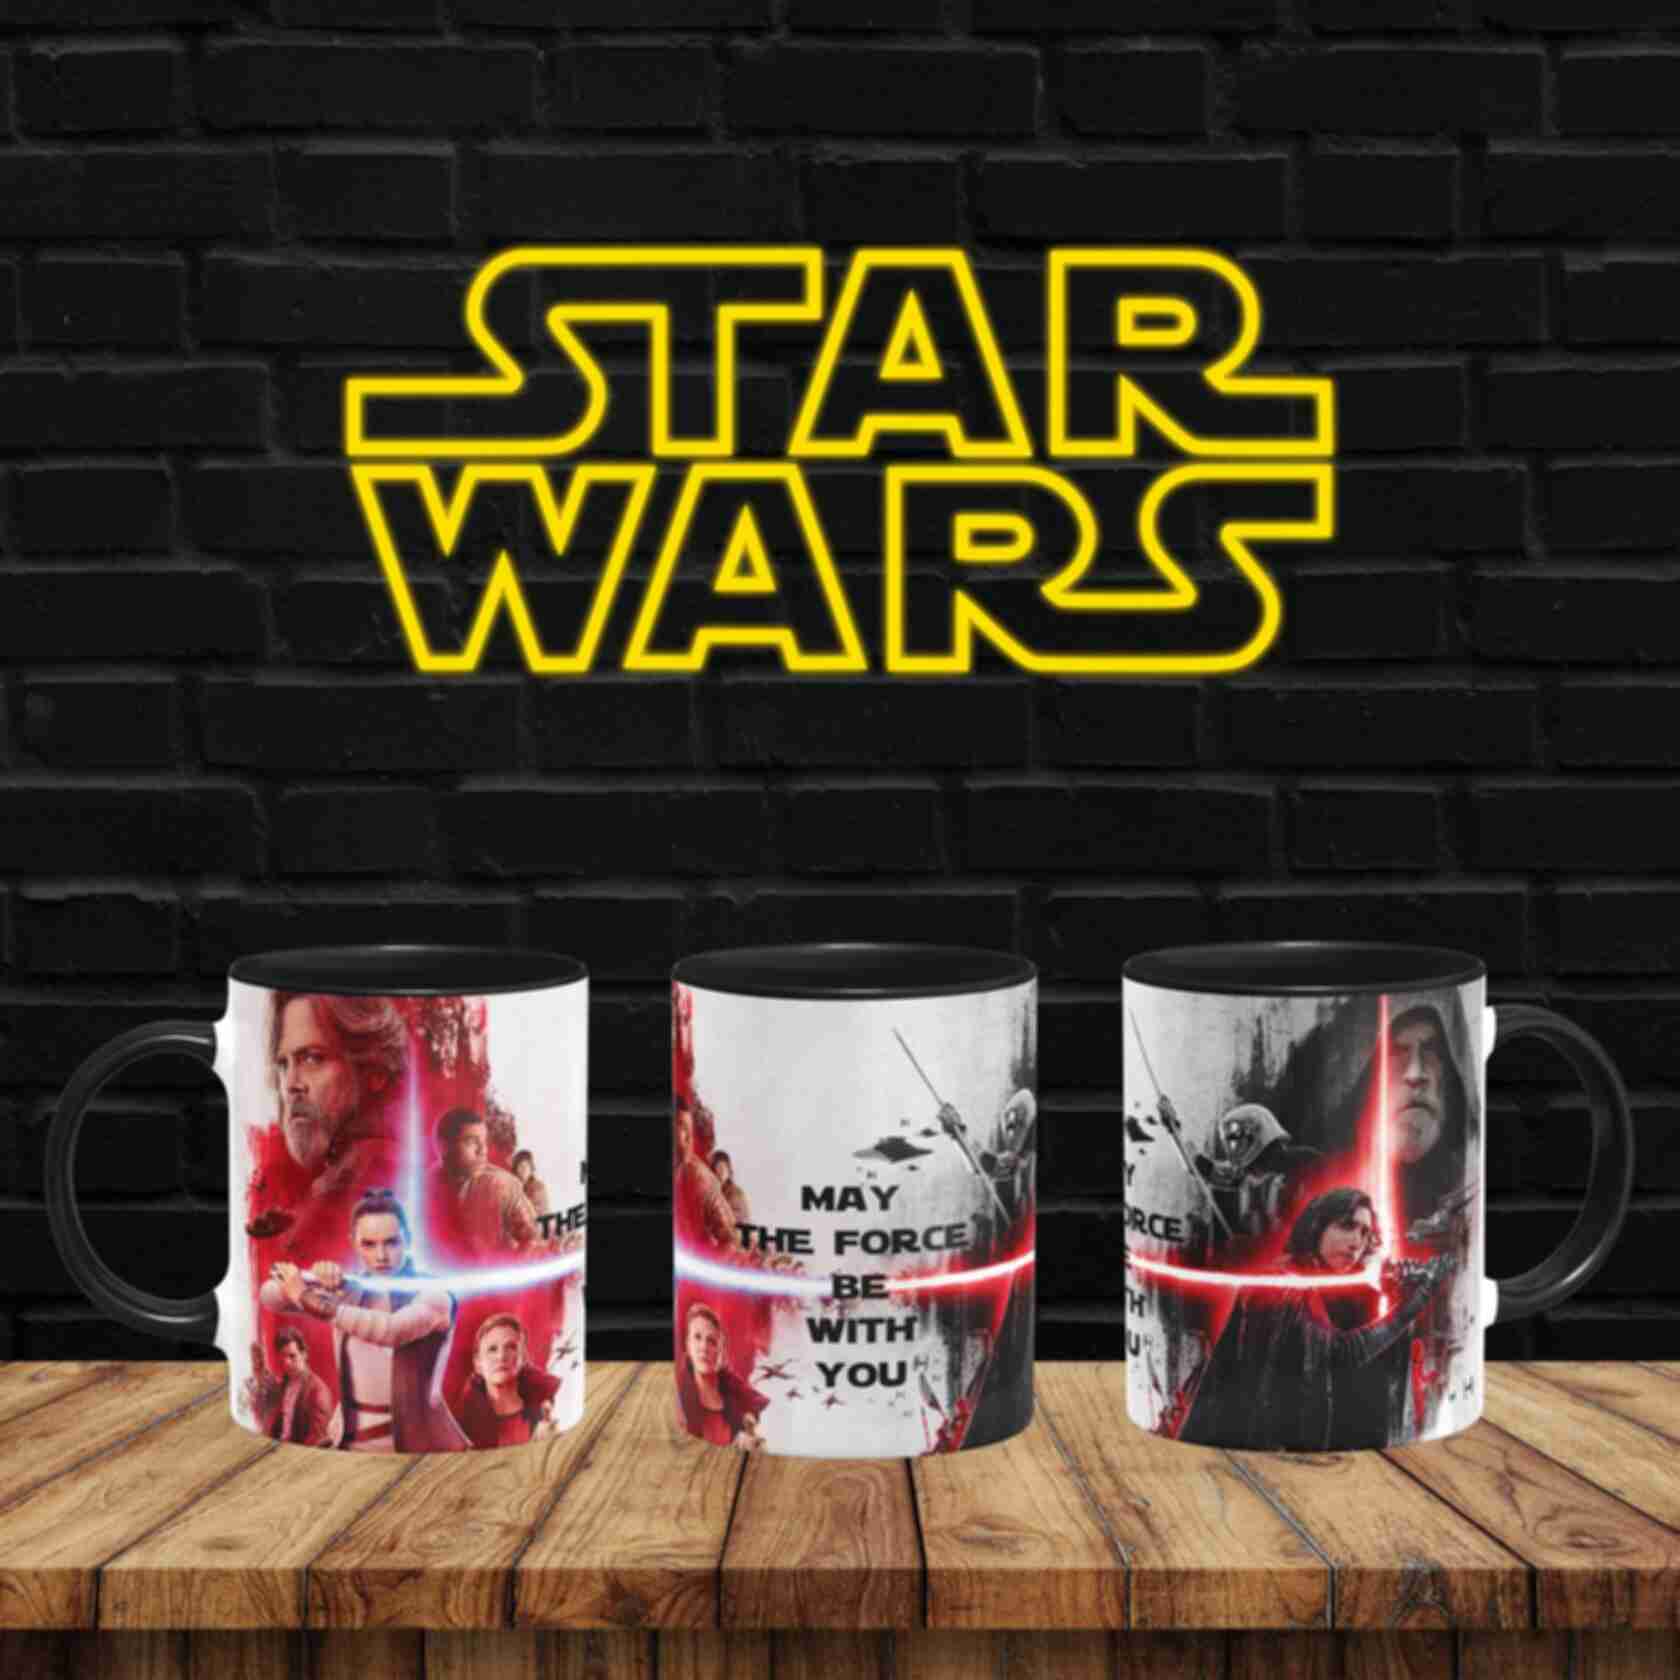 Чашка №4 • Останні джедаї ⦁ Зоряні Війни ⦁ Горнятко ⦁ Подарок фанату Star Wars